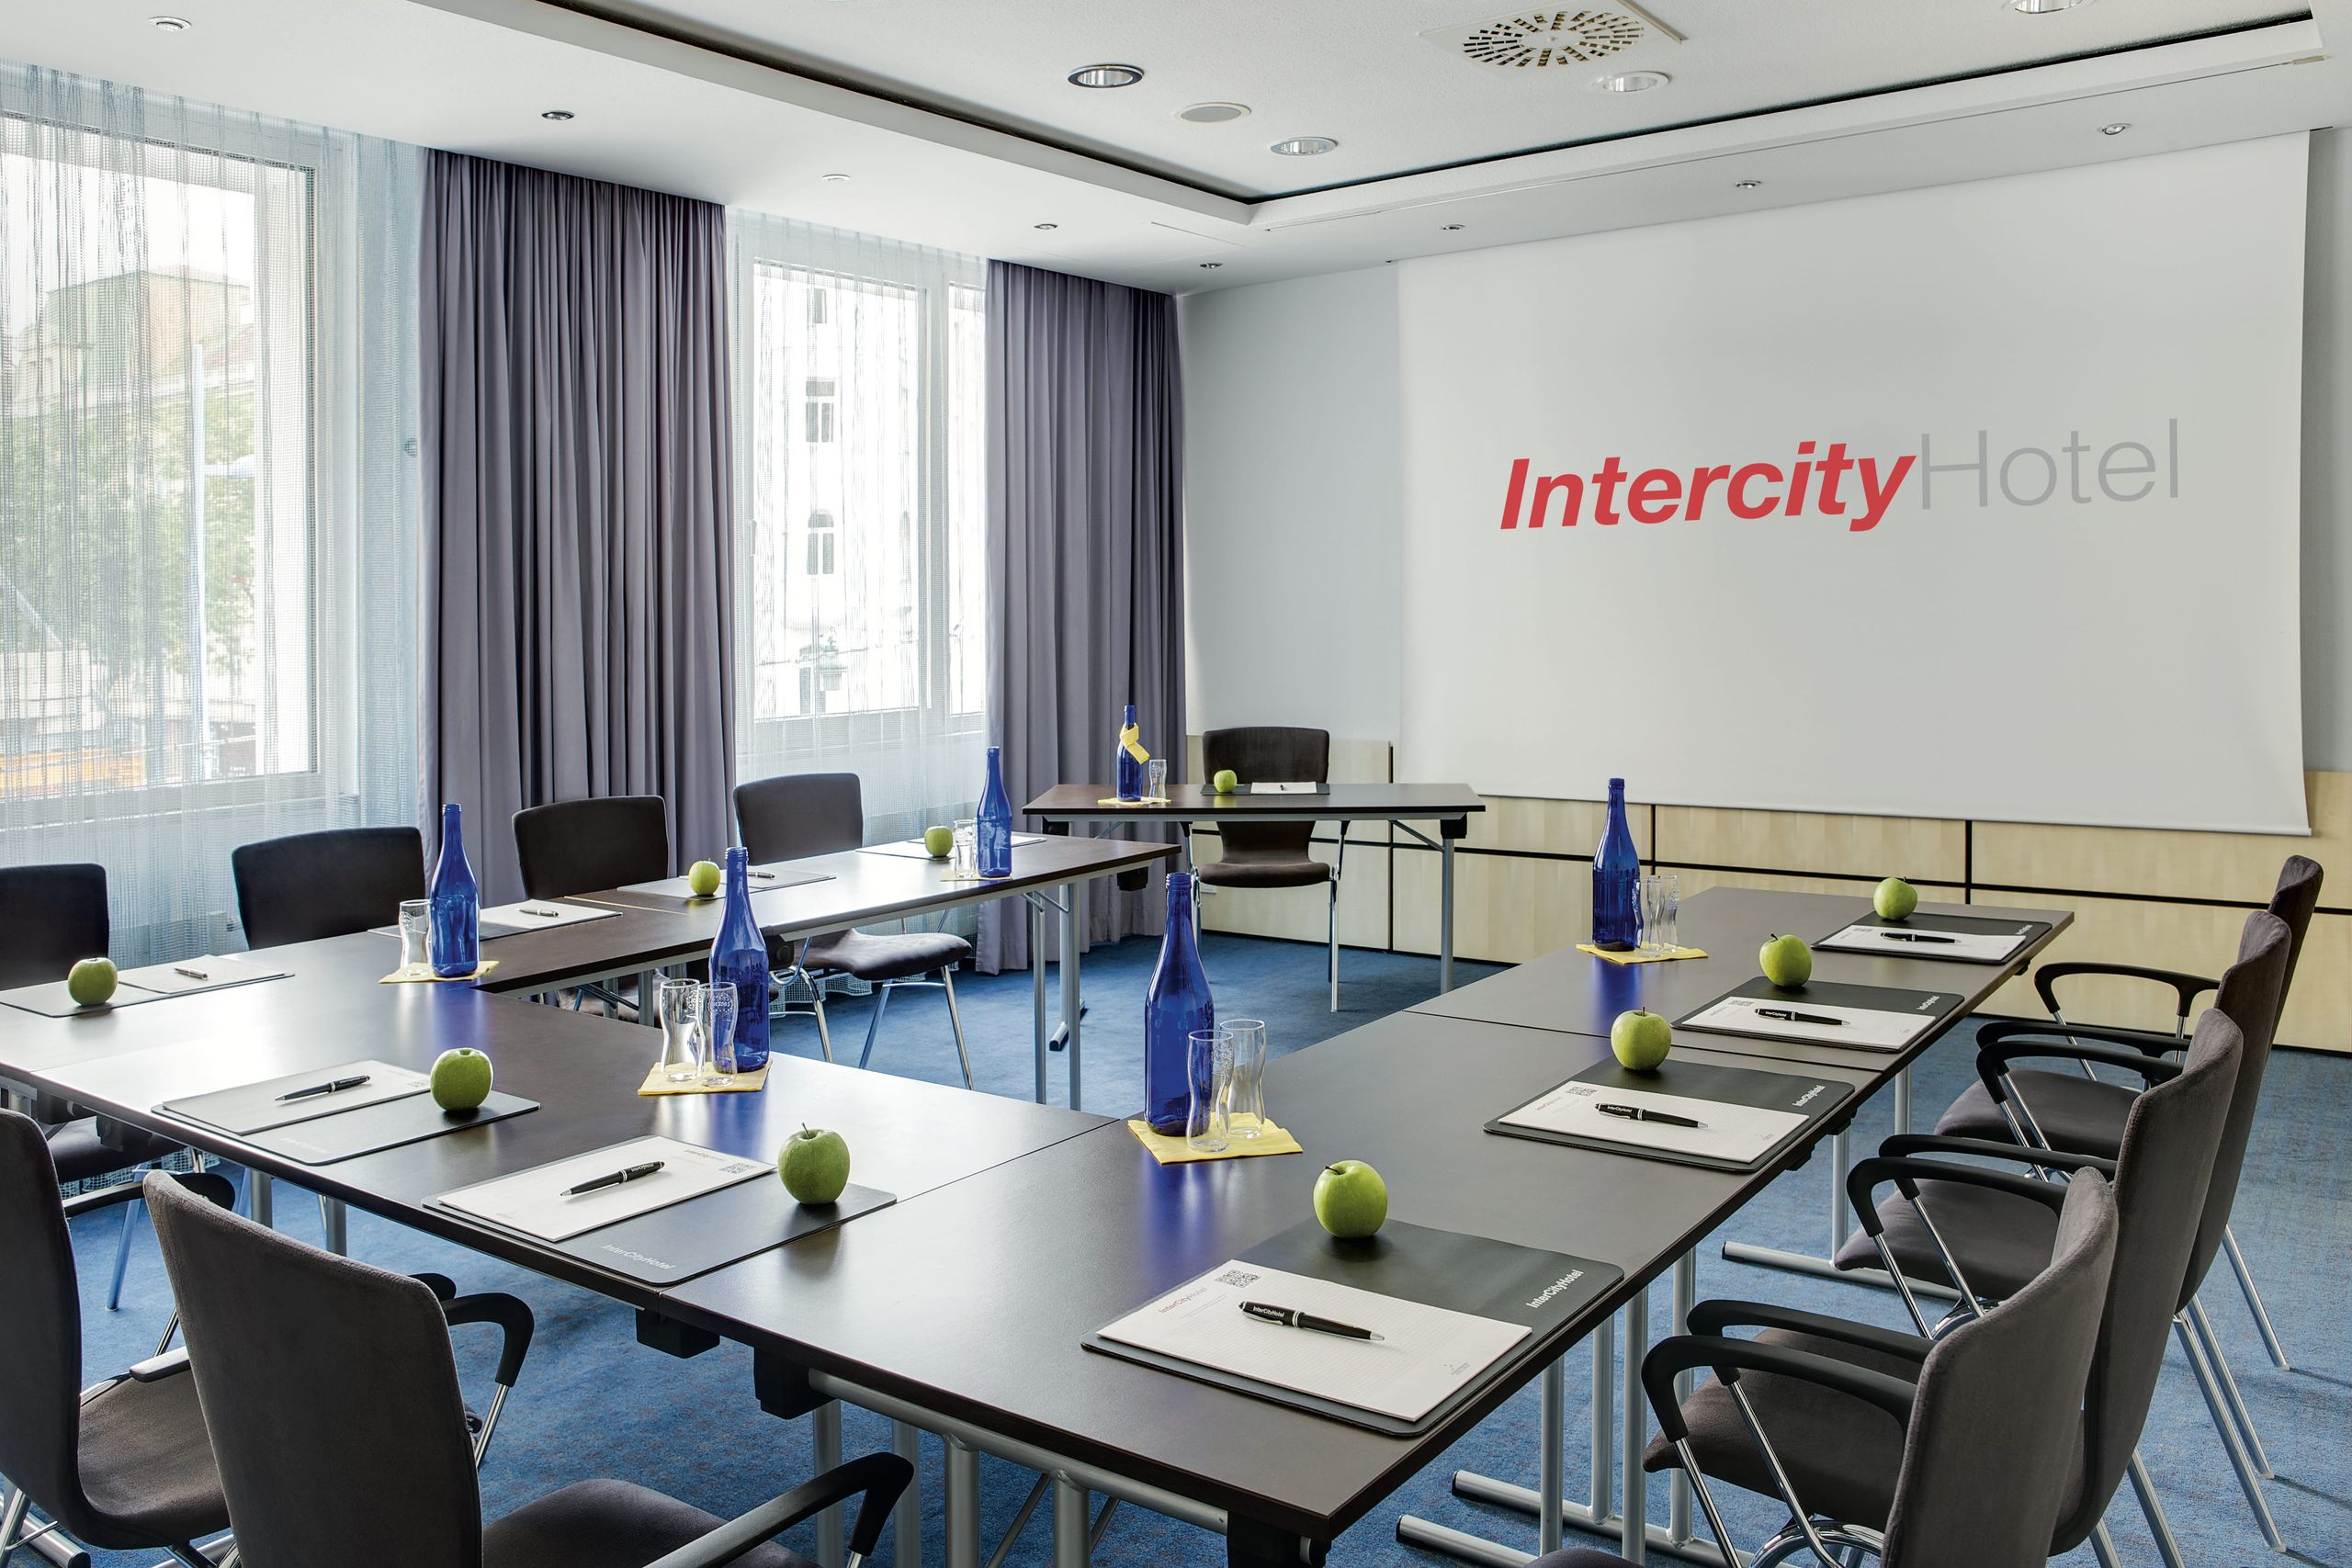 IntercityHotel Wien - meeting rooms